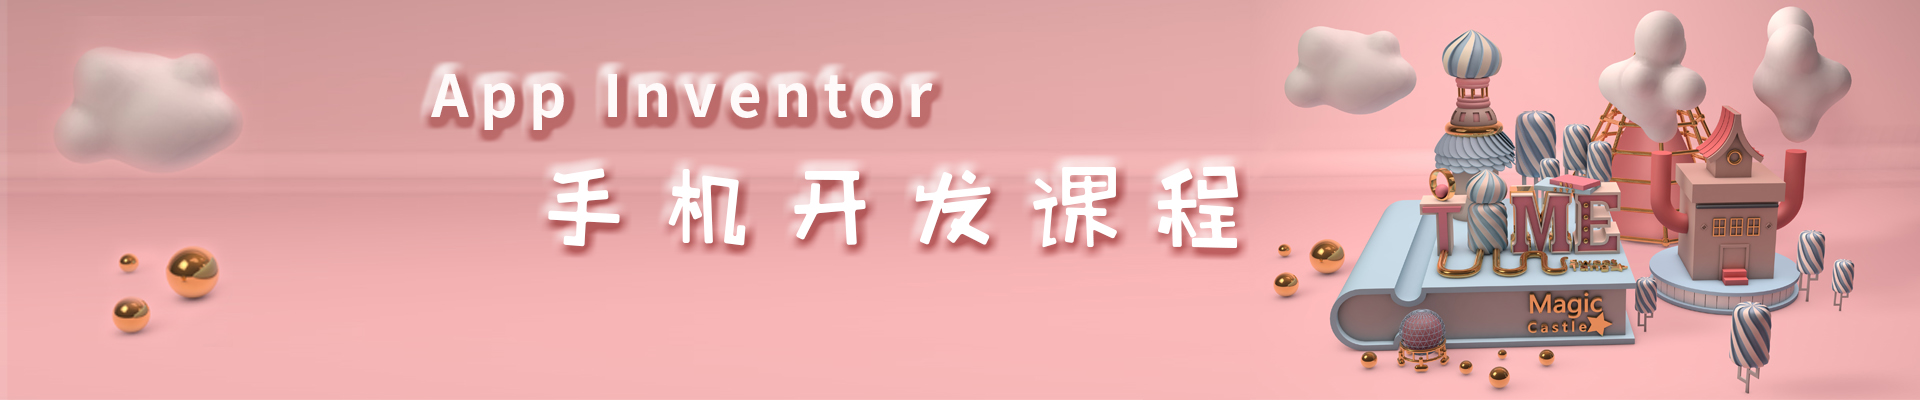 重庆龙湖时代小码王编程培训机构